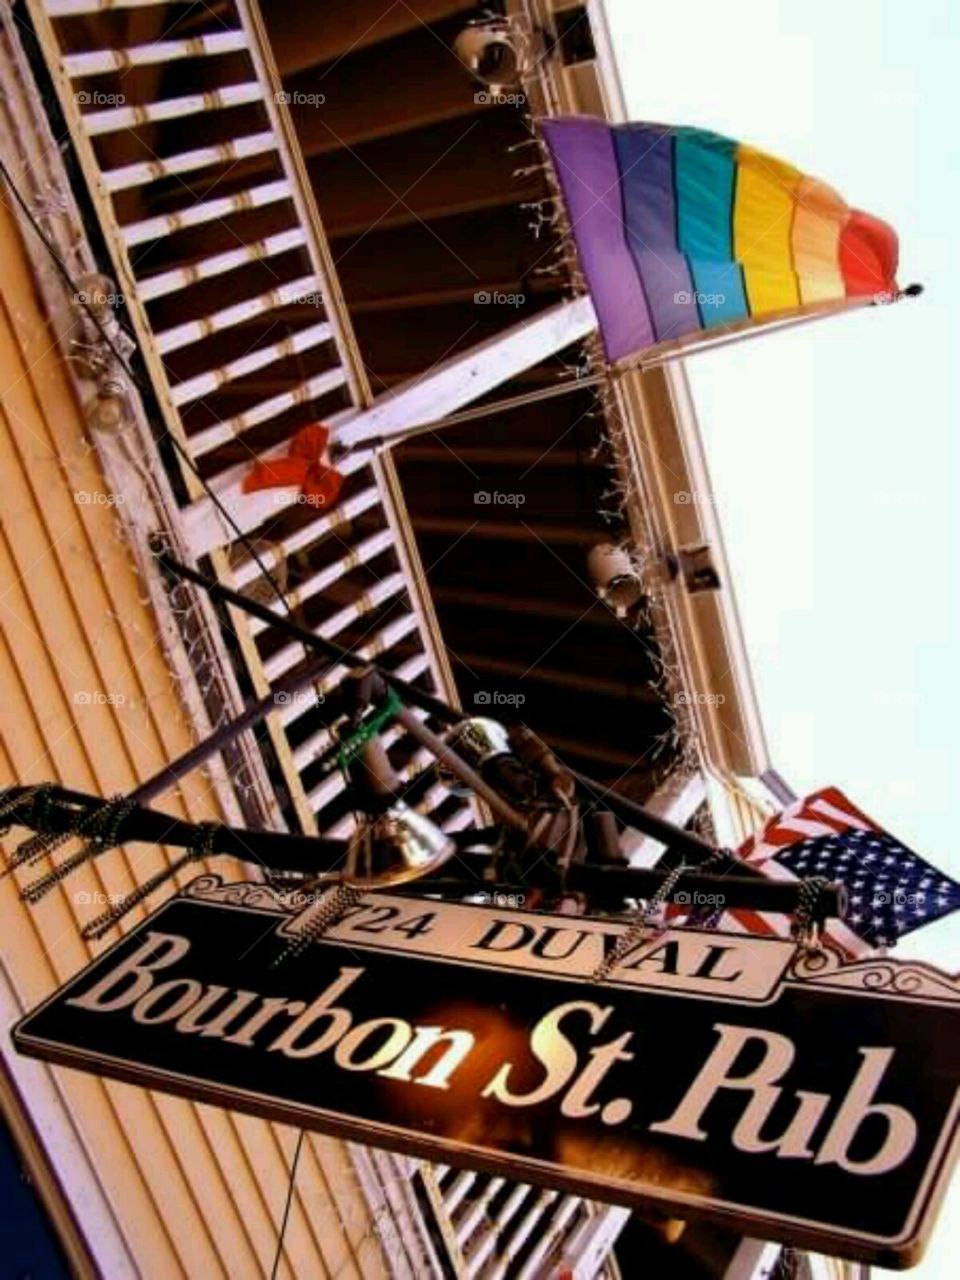 pride. key west, florida bar after a gay pride parade